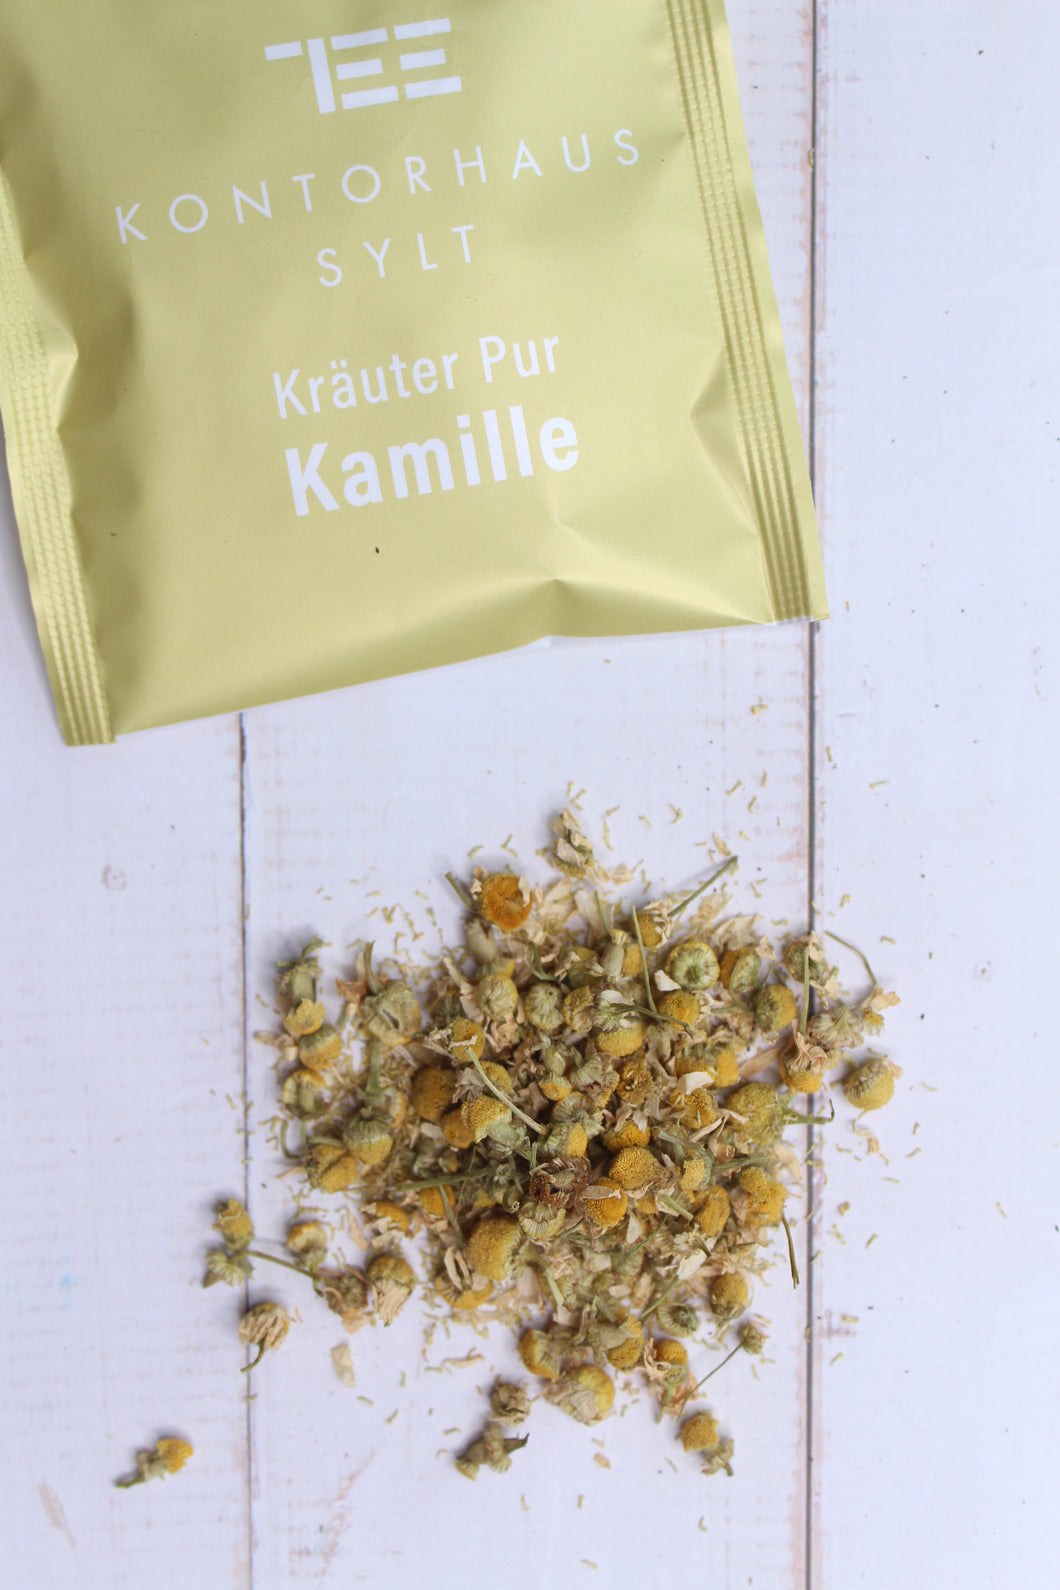 Kräuter Pur / Kamille